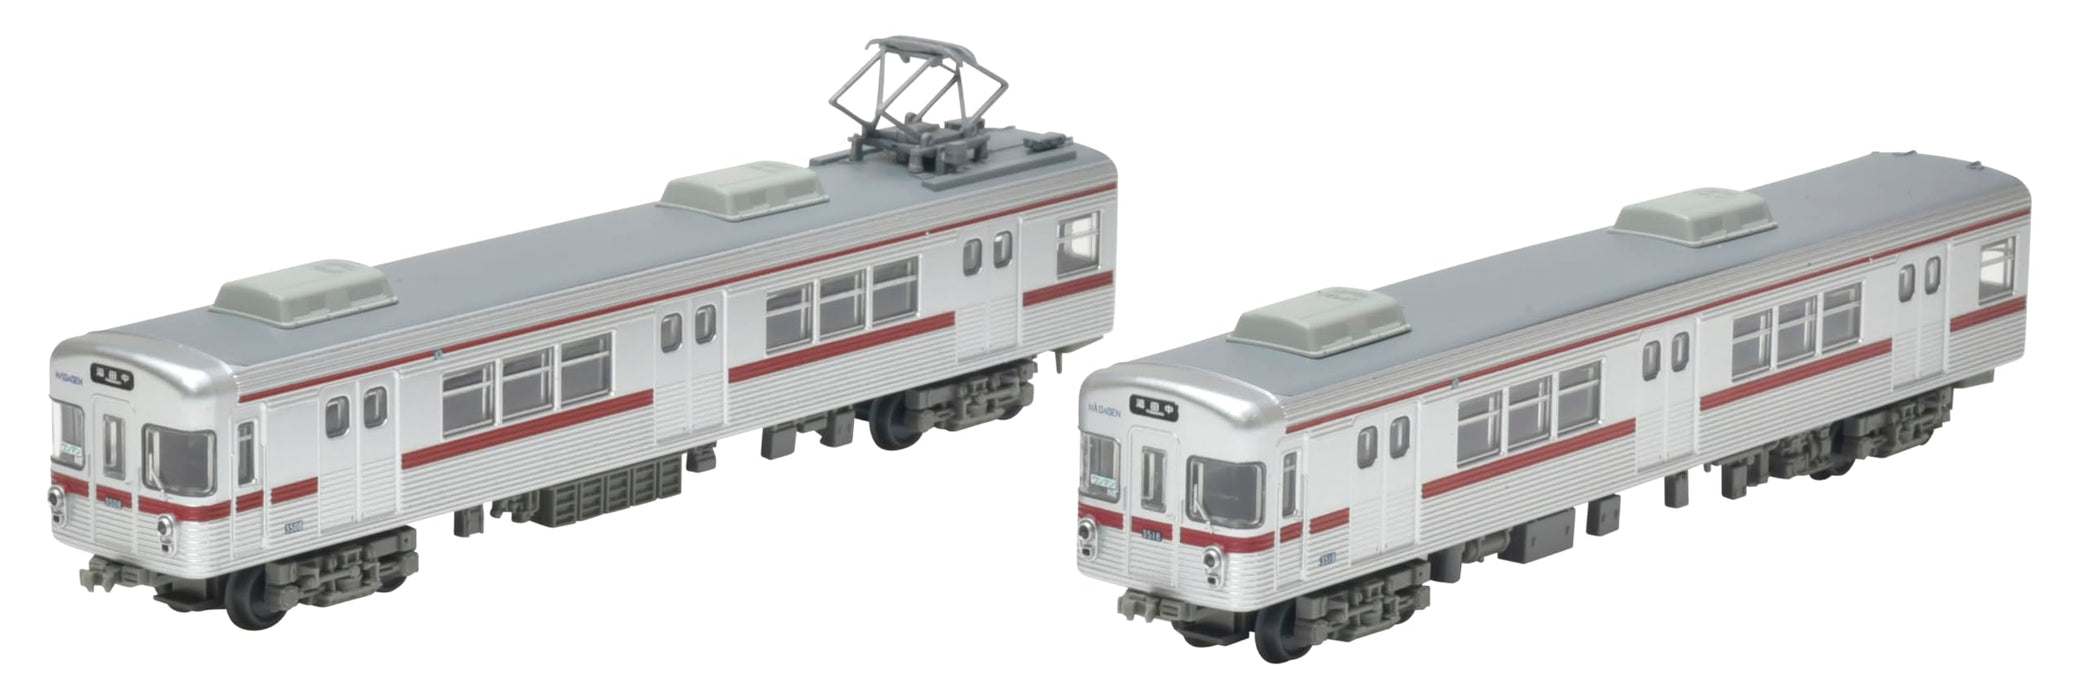 Tomytec Railway Collection – Gedenk-Diorama mit 2 Wagen der Nagano Electric Railway 3500-Serie